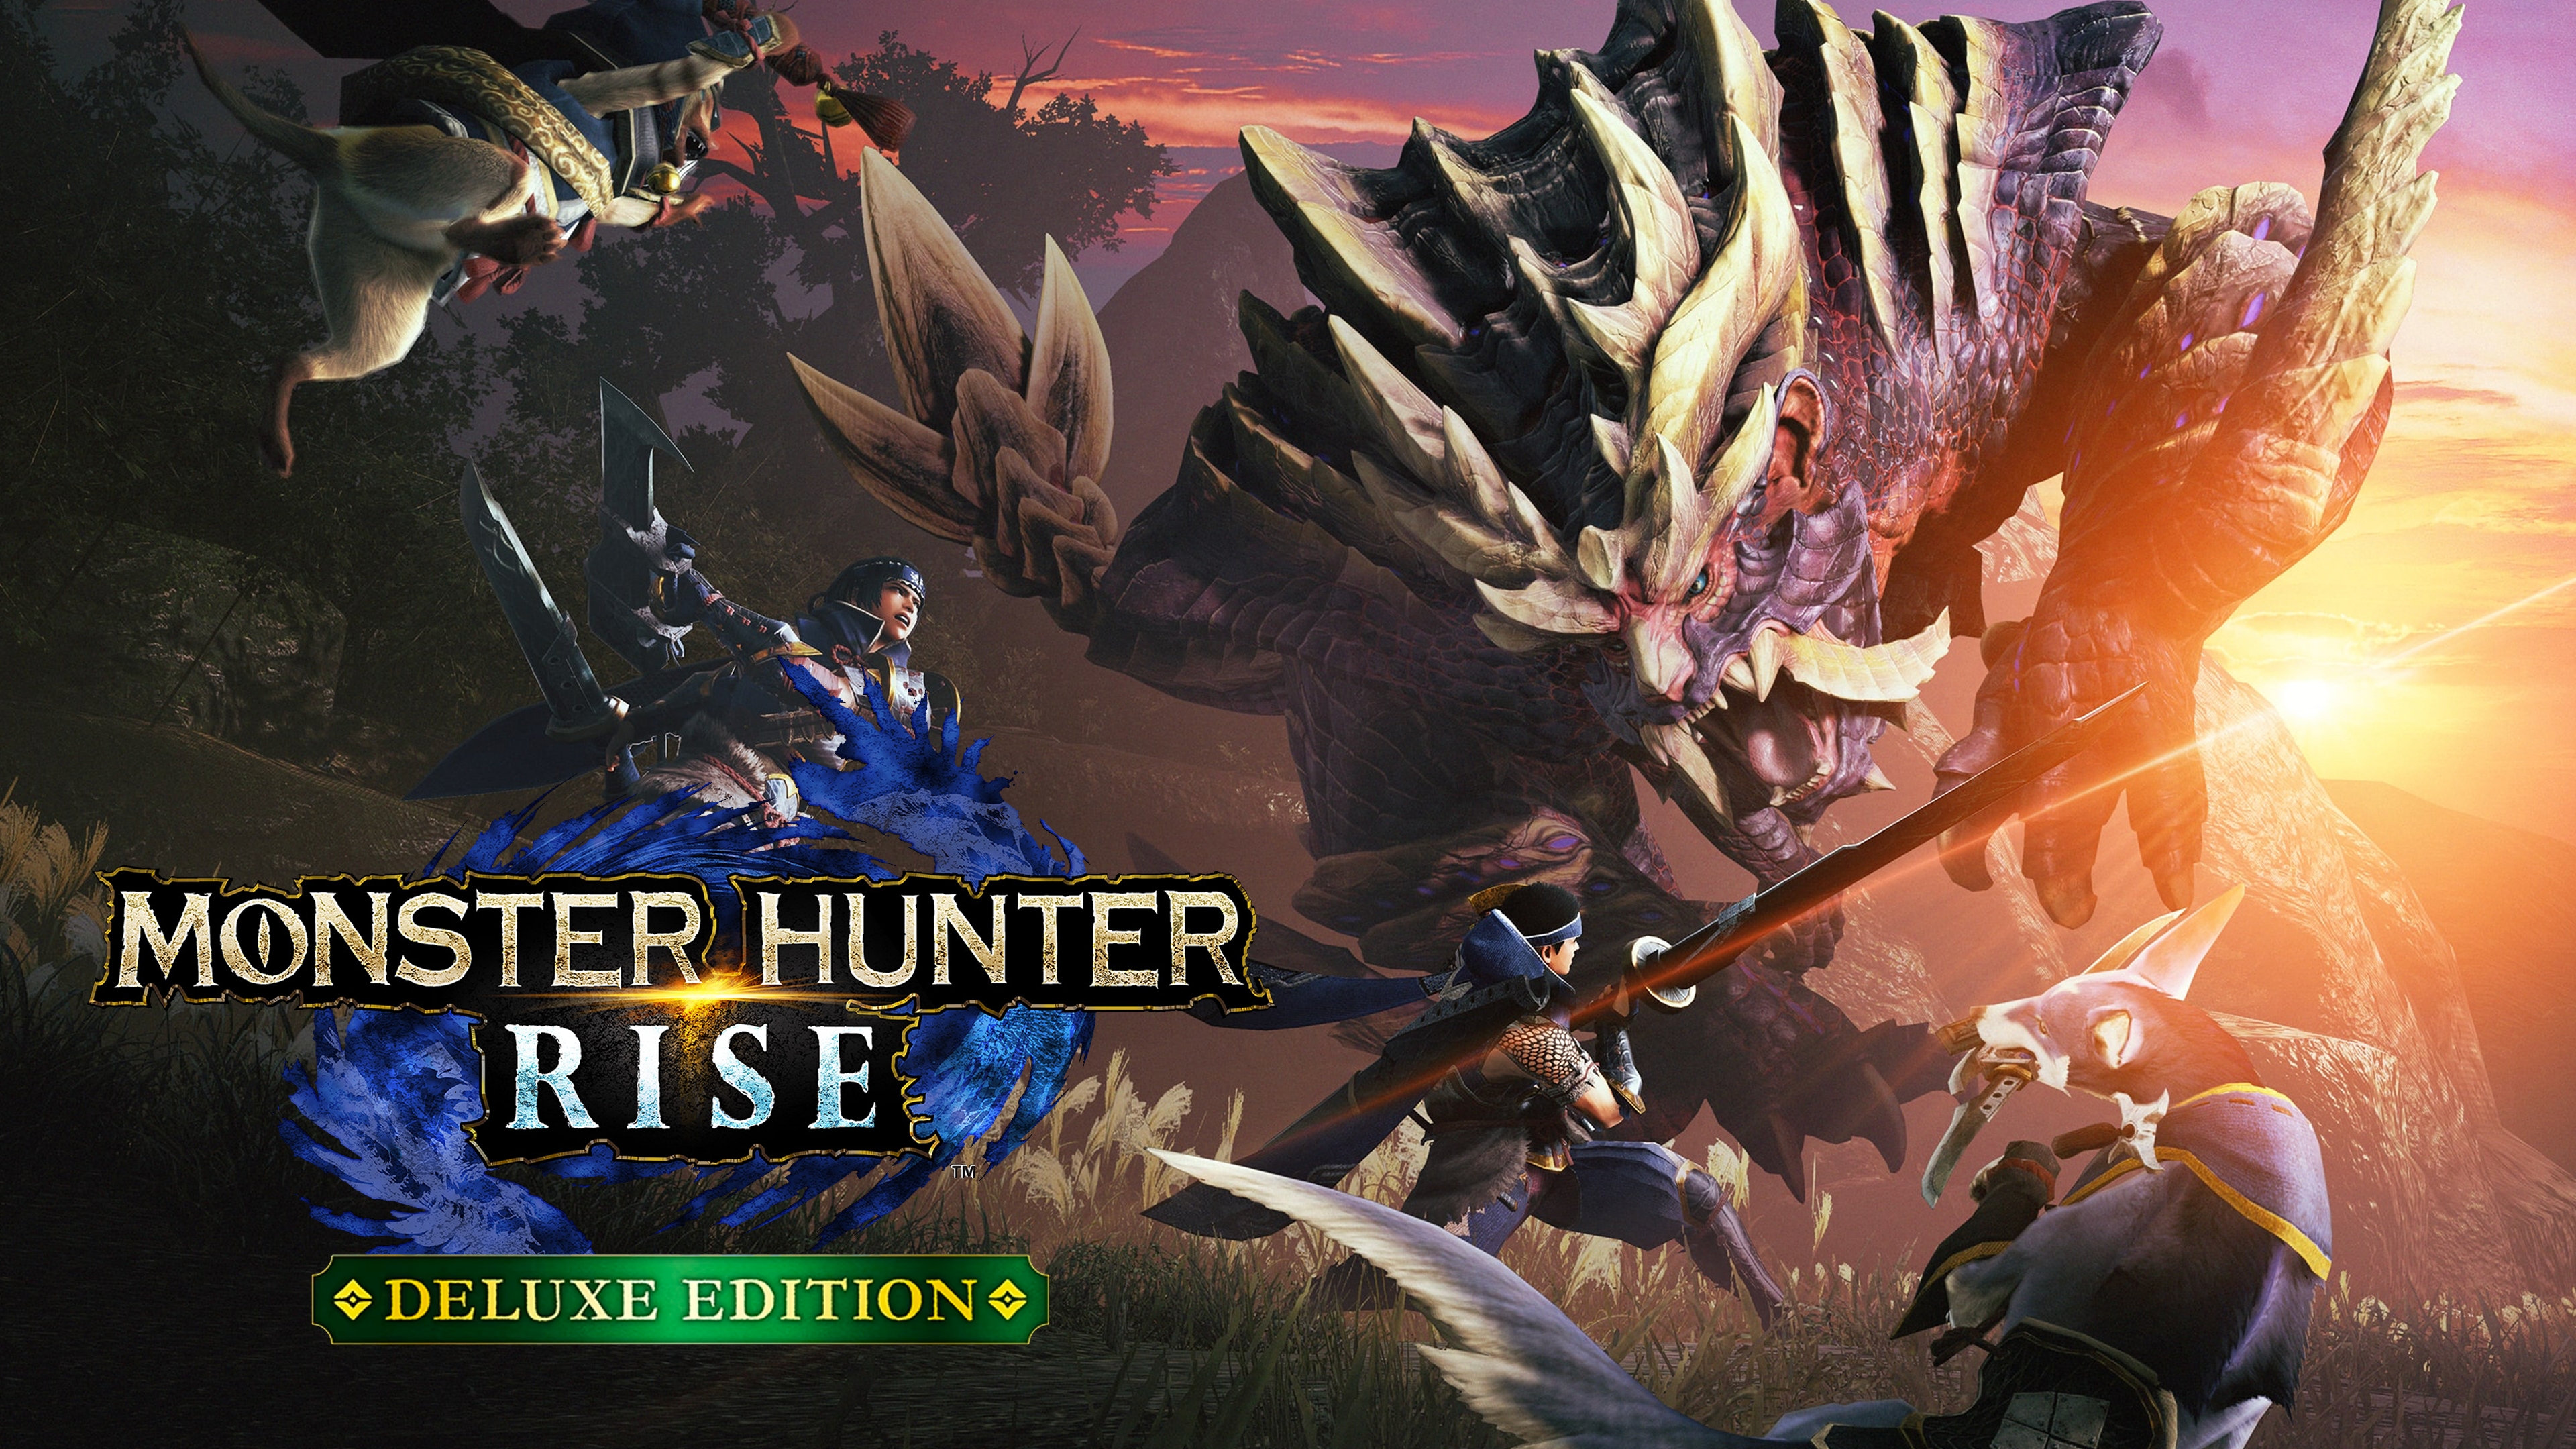 Monster Hunter World: Iceborne Steam Key for PC - Buy now